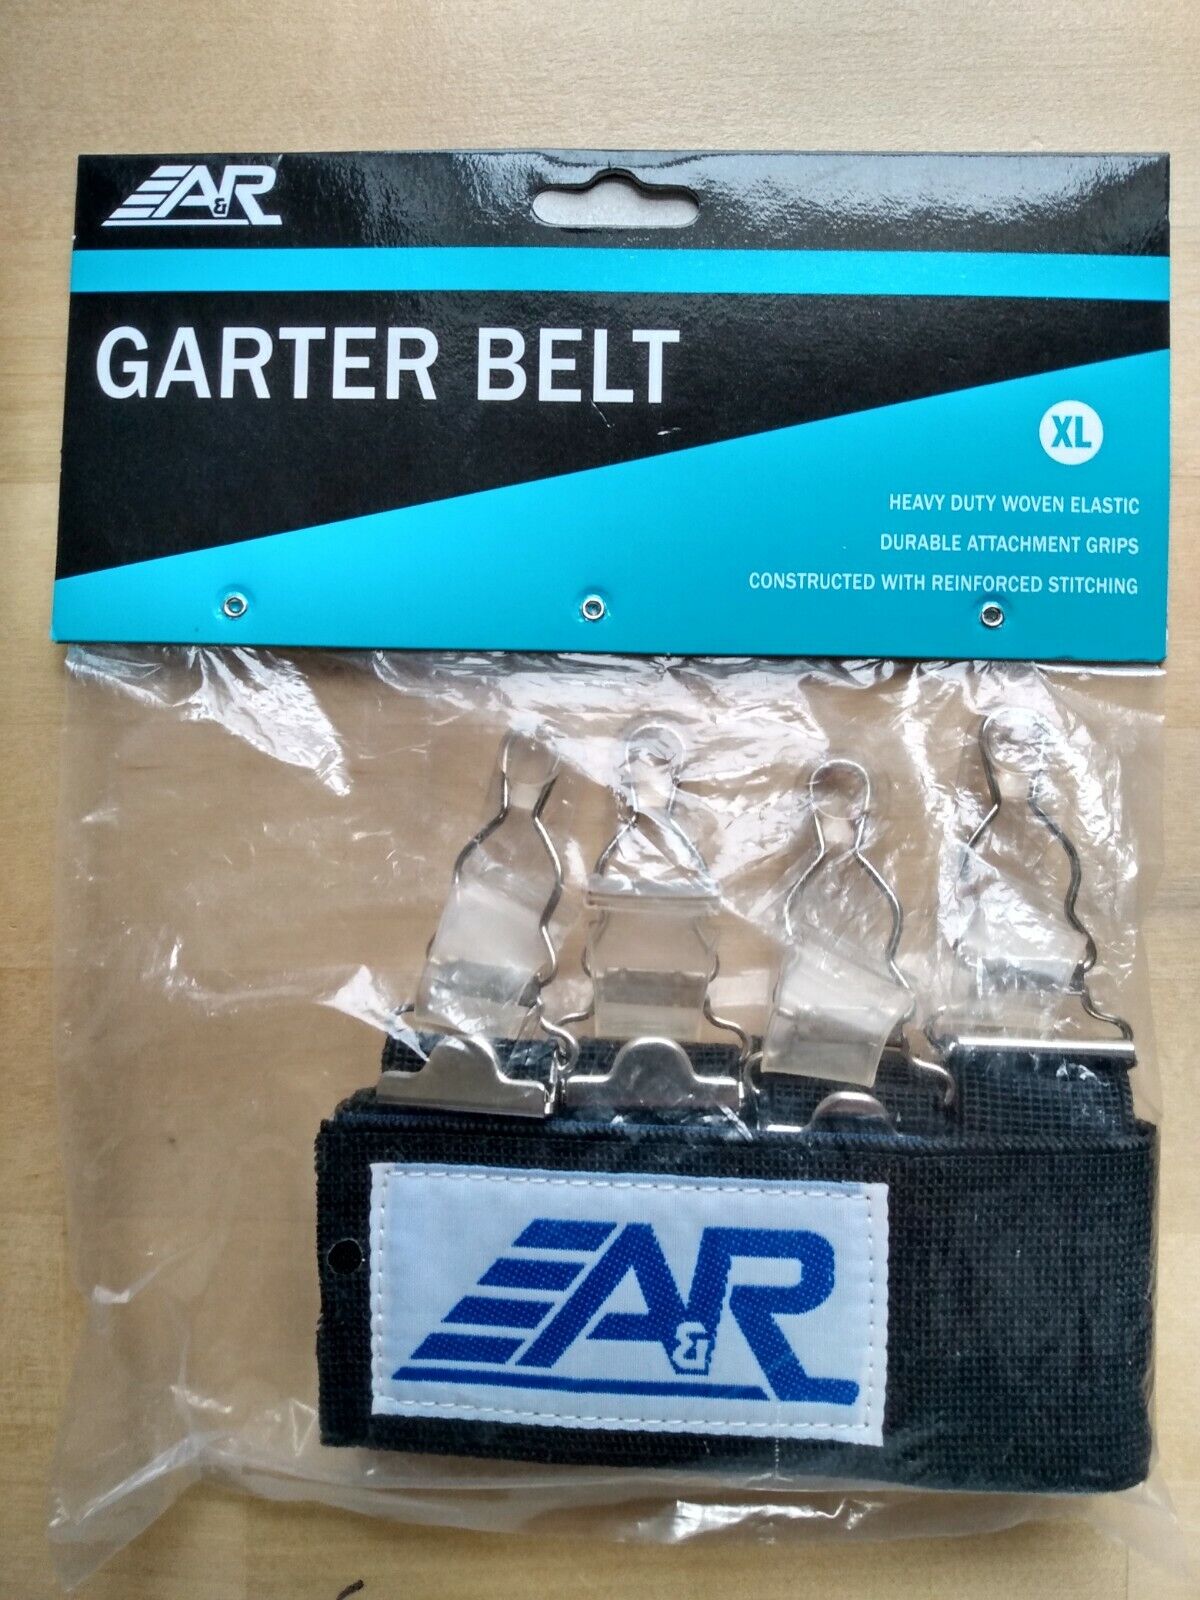 A&r Garter Belt Xl Heavy Duty Woven Elastic Durable Attachment Grips, Reinforced